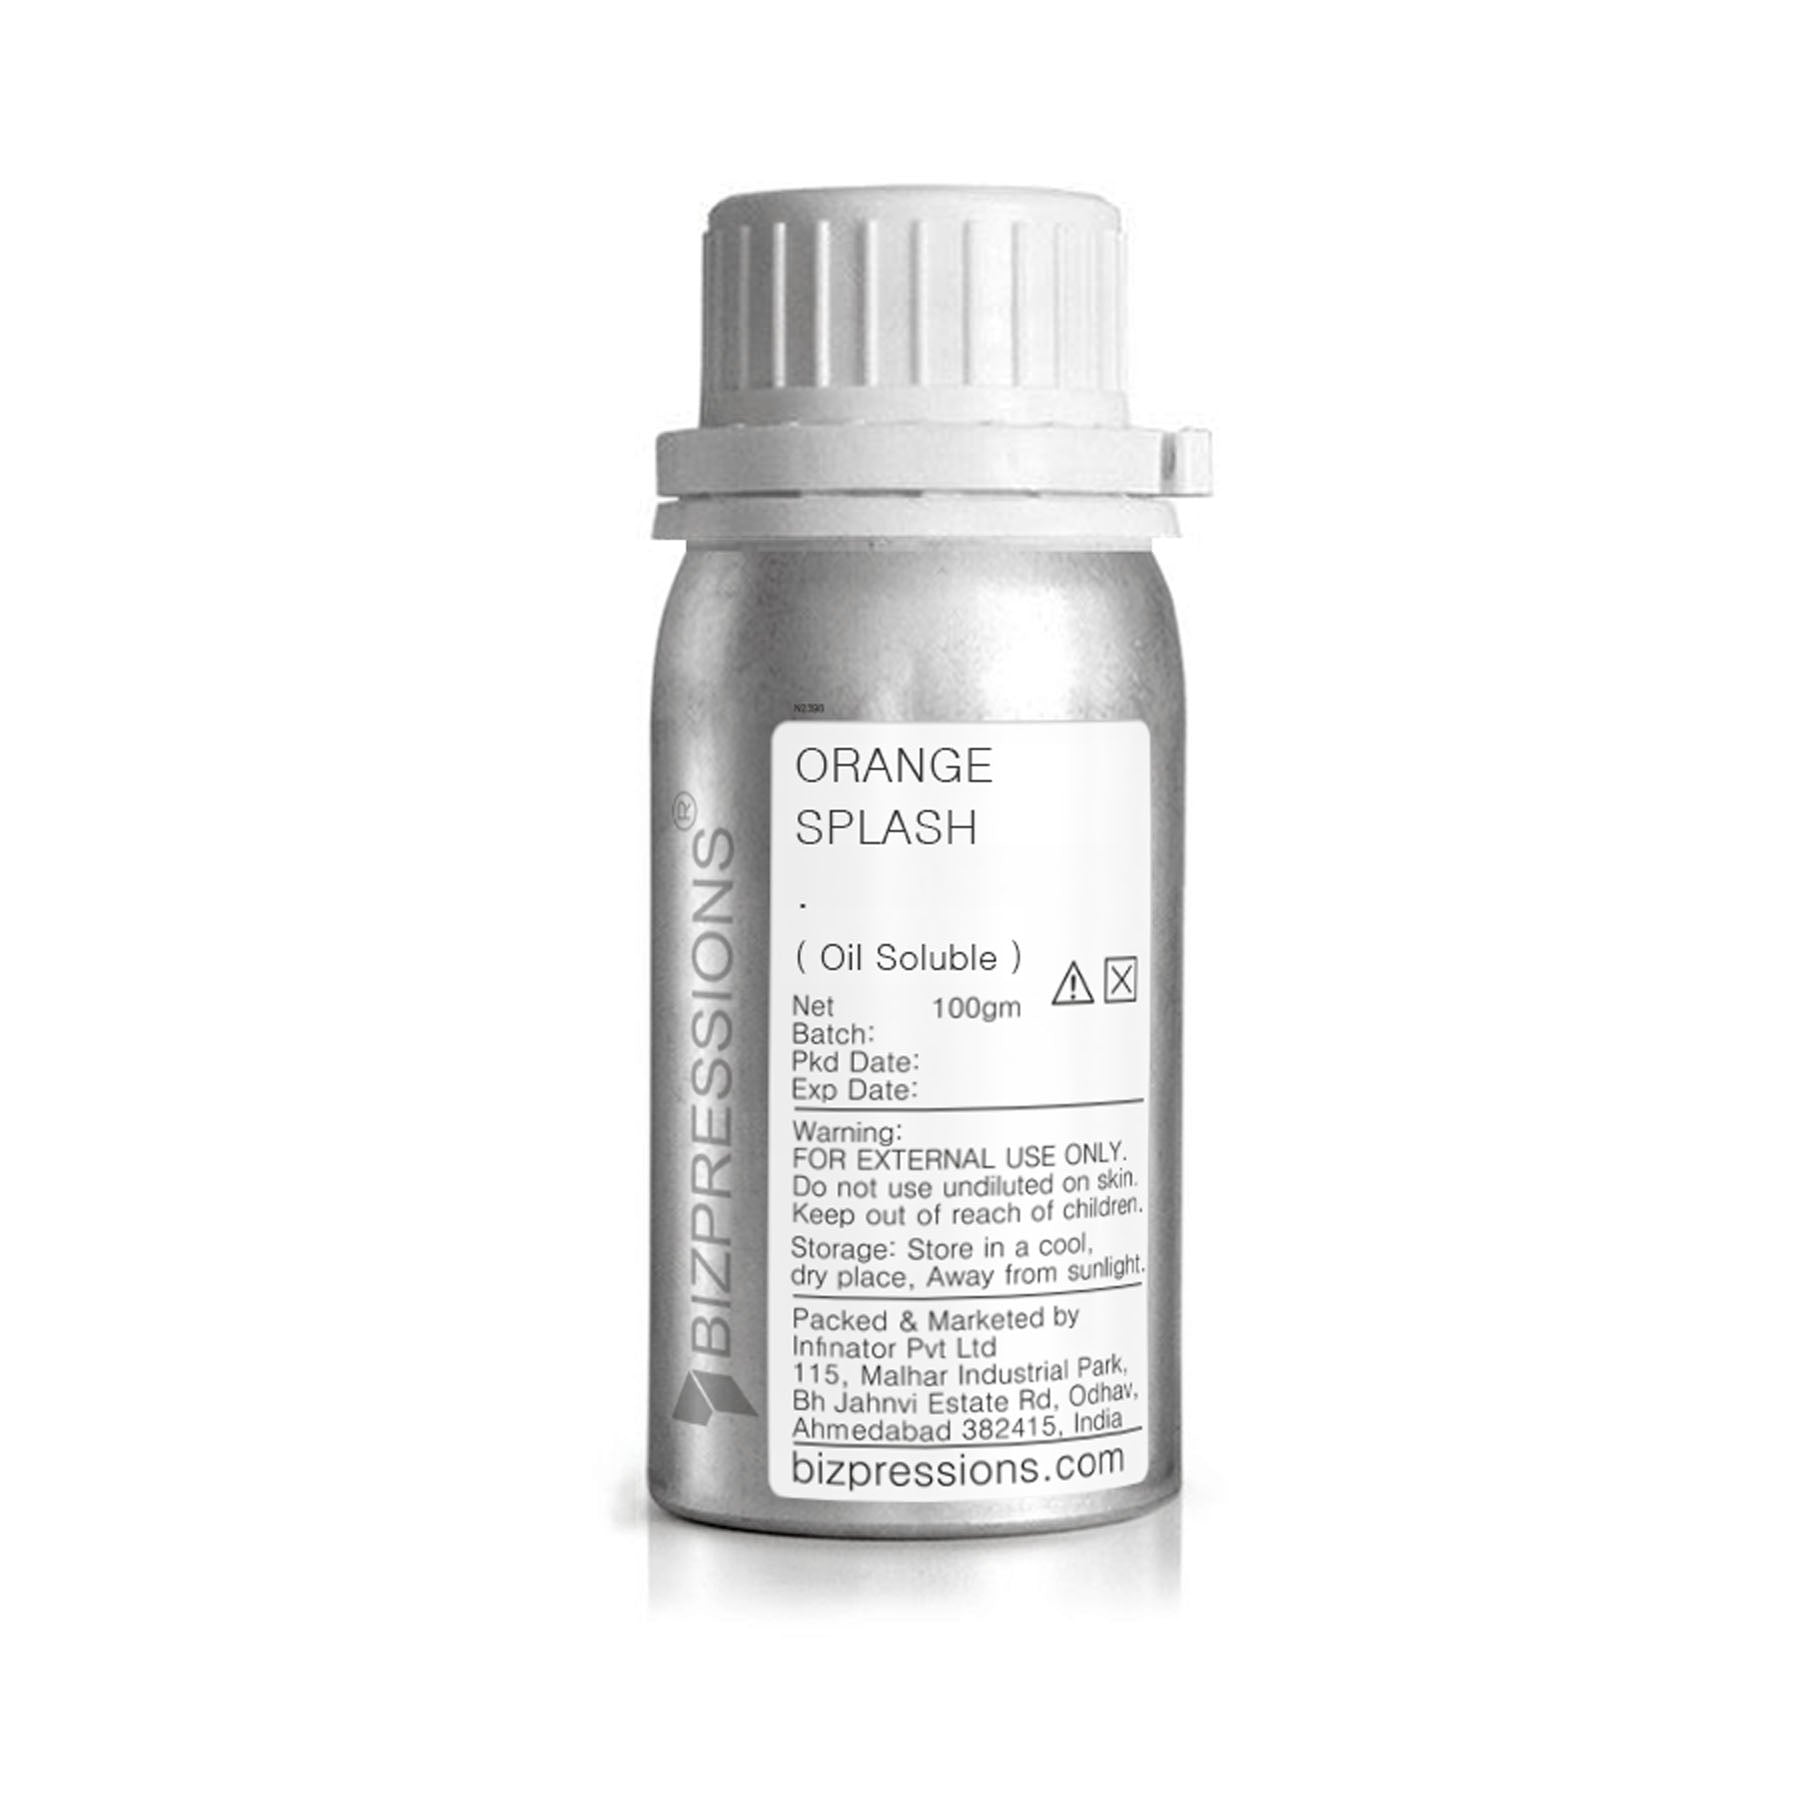 ORANGE SPLASH - Fragrance ( Oil Soluble ) - 100 gm